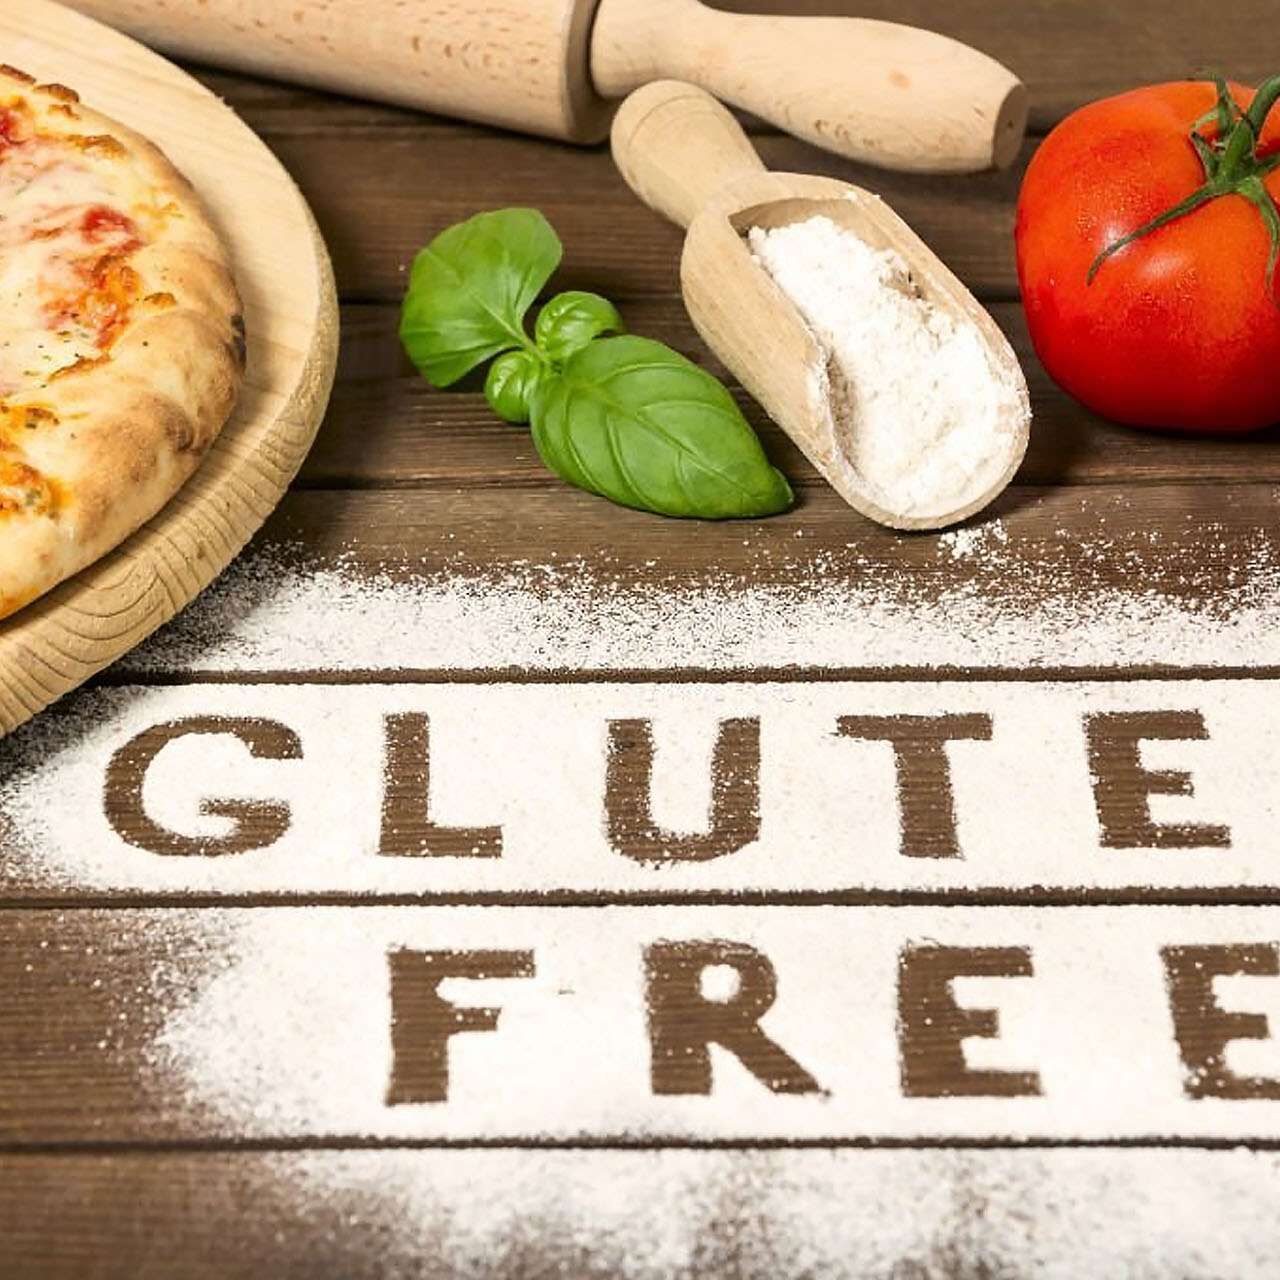 È diffusa l'idea che gli alimenti senza glutine siano più sani, ma ciò non è corretto